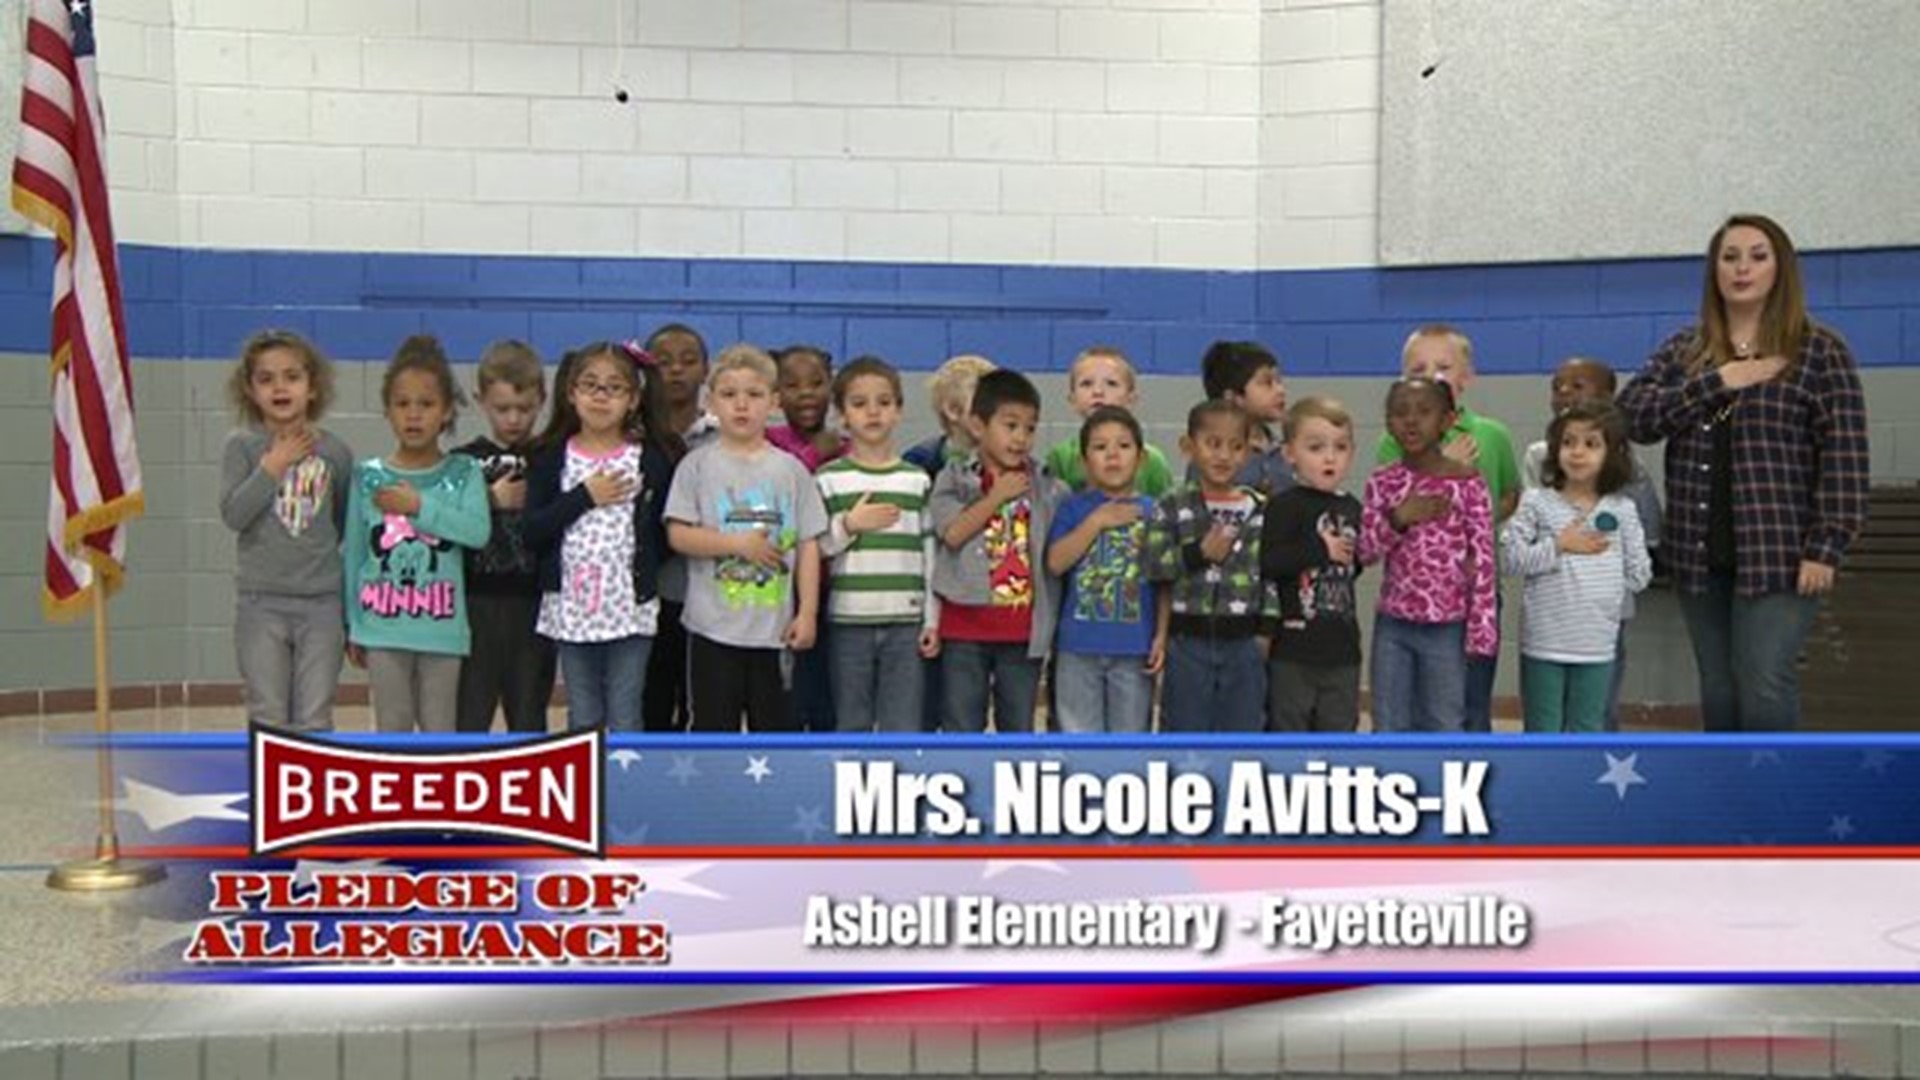 Asbell Elementary - Fayetteville, Mrs. Avitts - Kindergarten